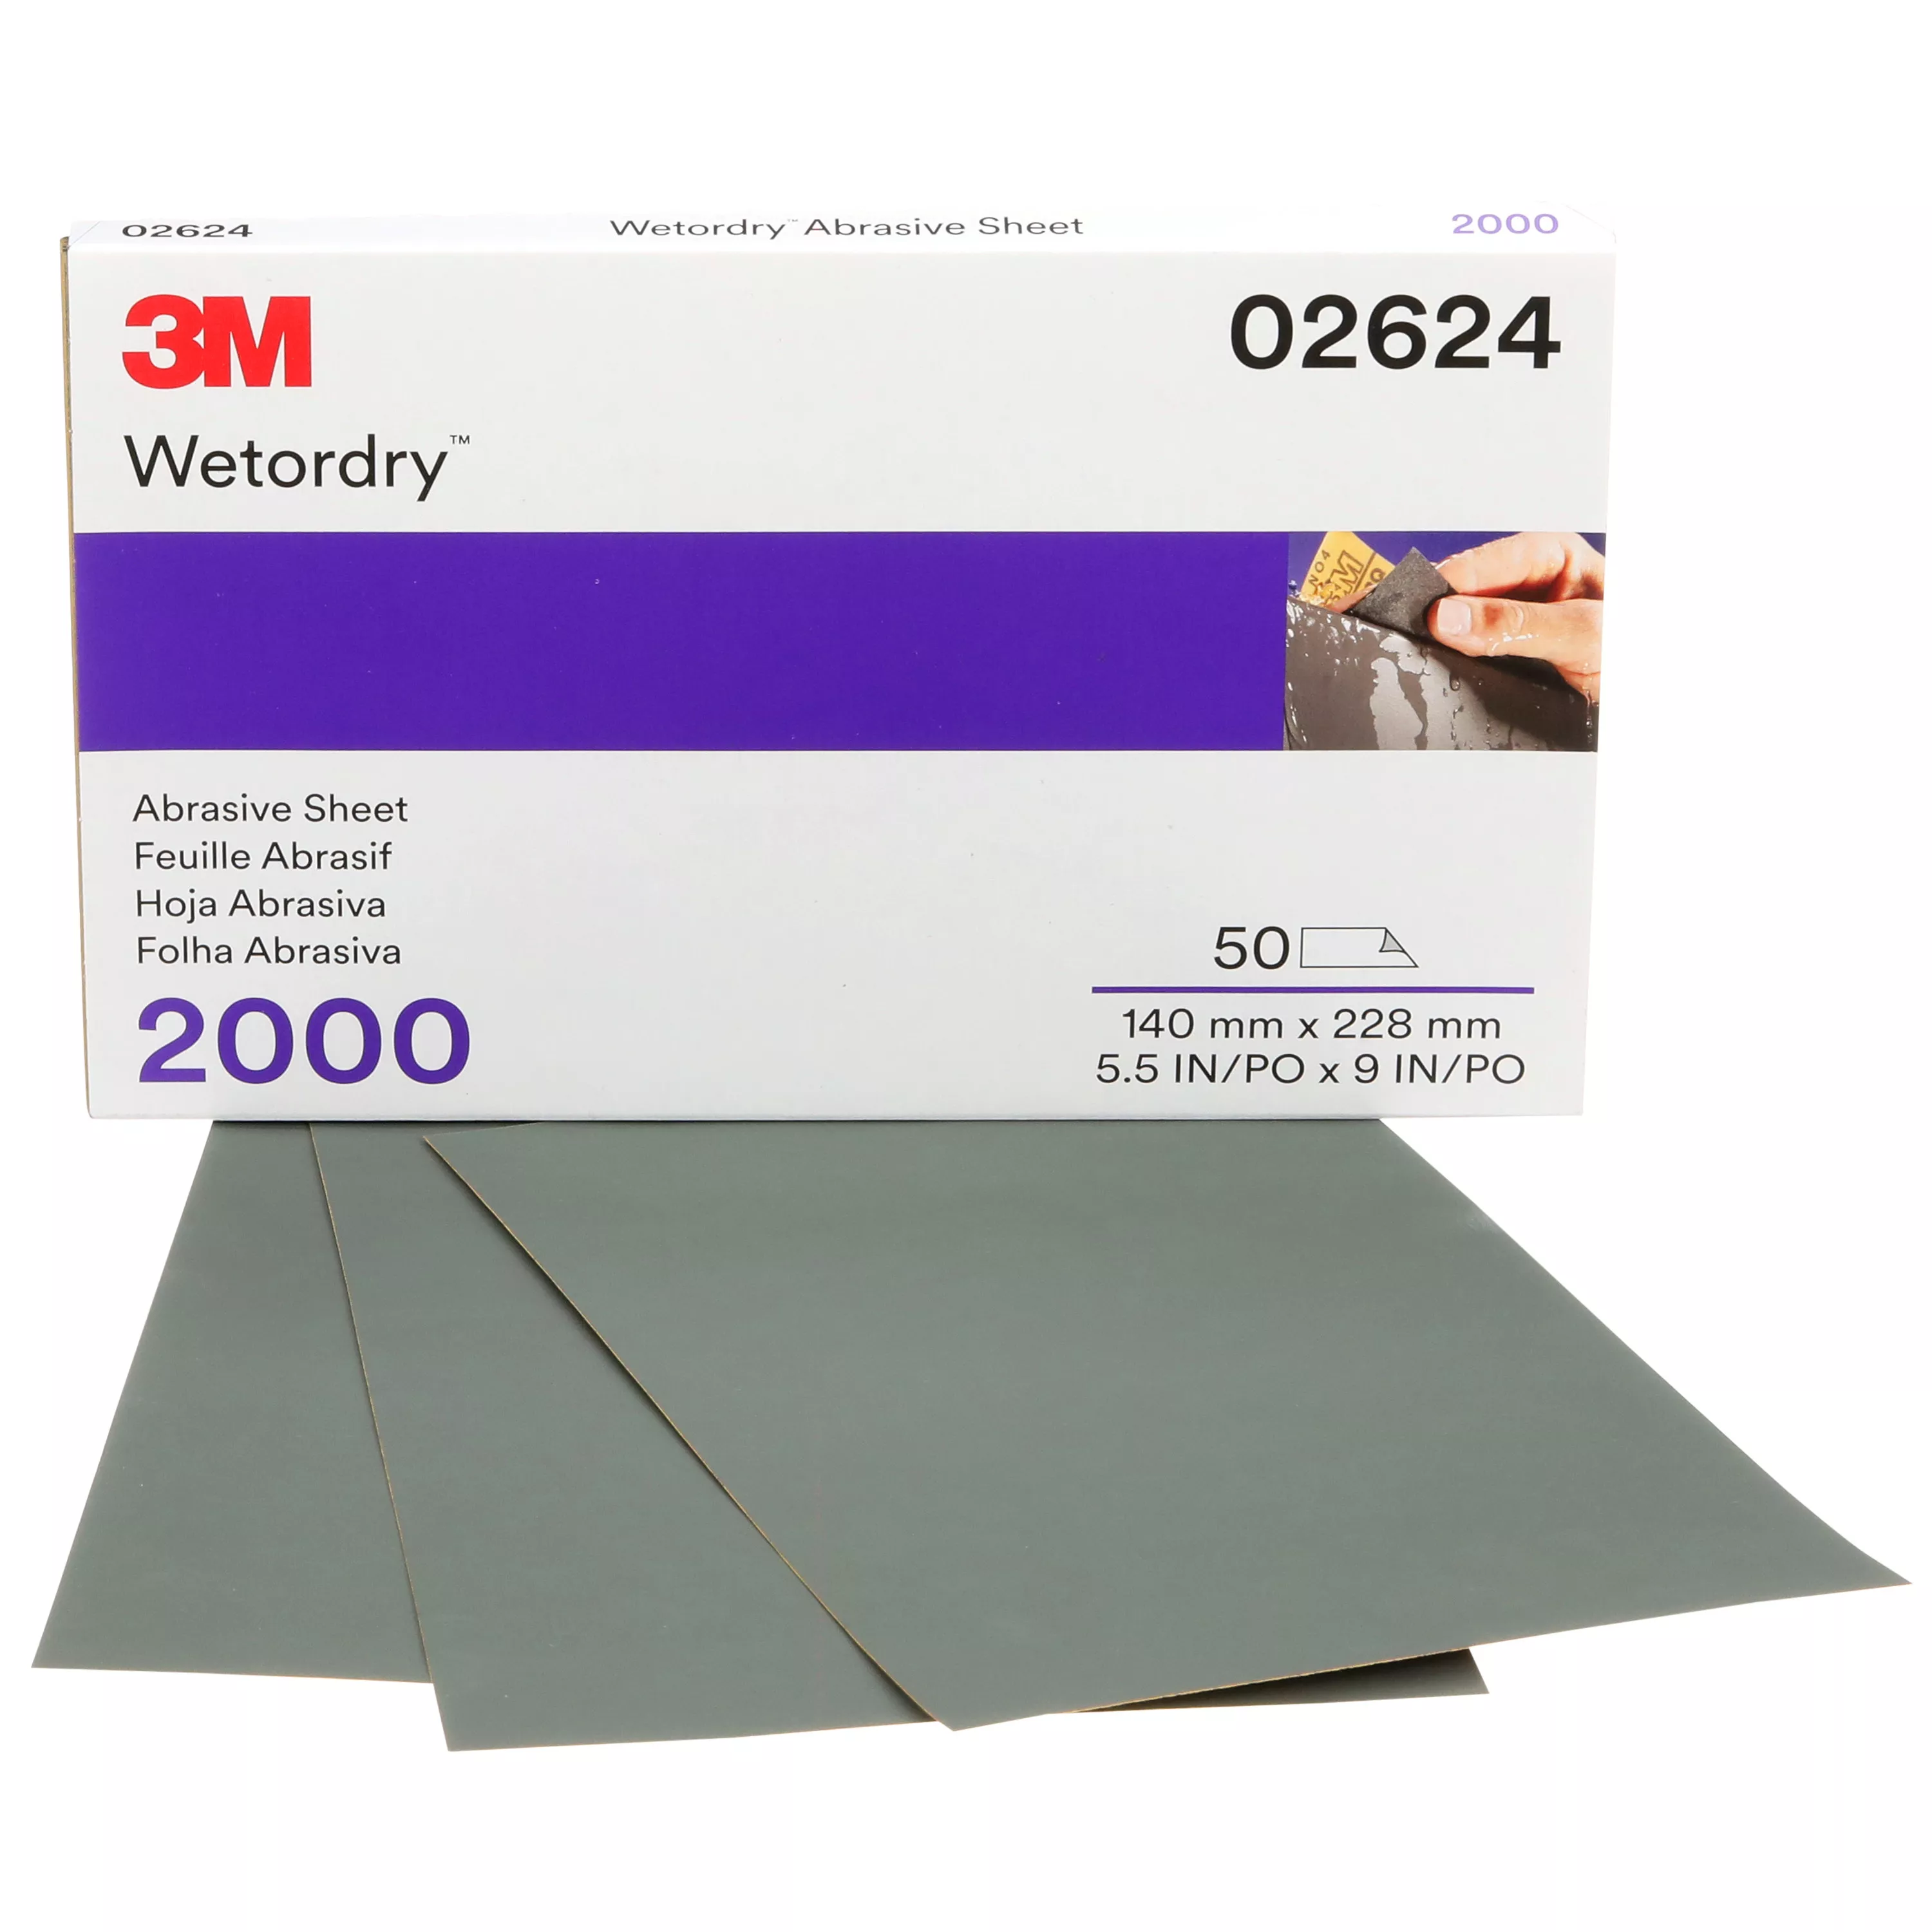 3M™ Wetordry™ Abrasive Sheet, 02624, 2000, heavy duty, 5 1/2 in x 9 in,
50 sheets per carton, 5 cartons per case